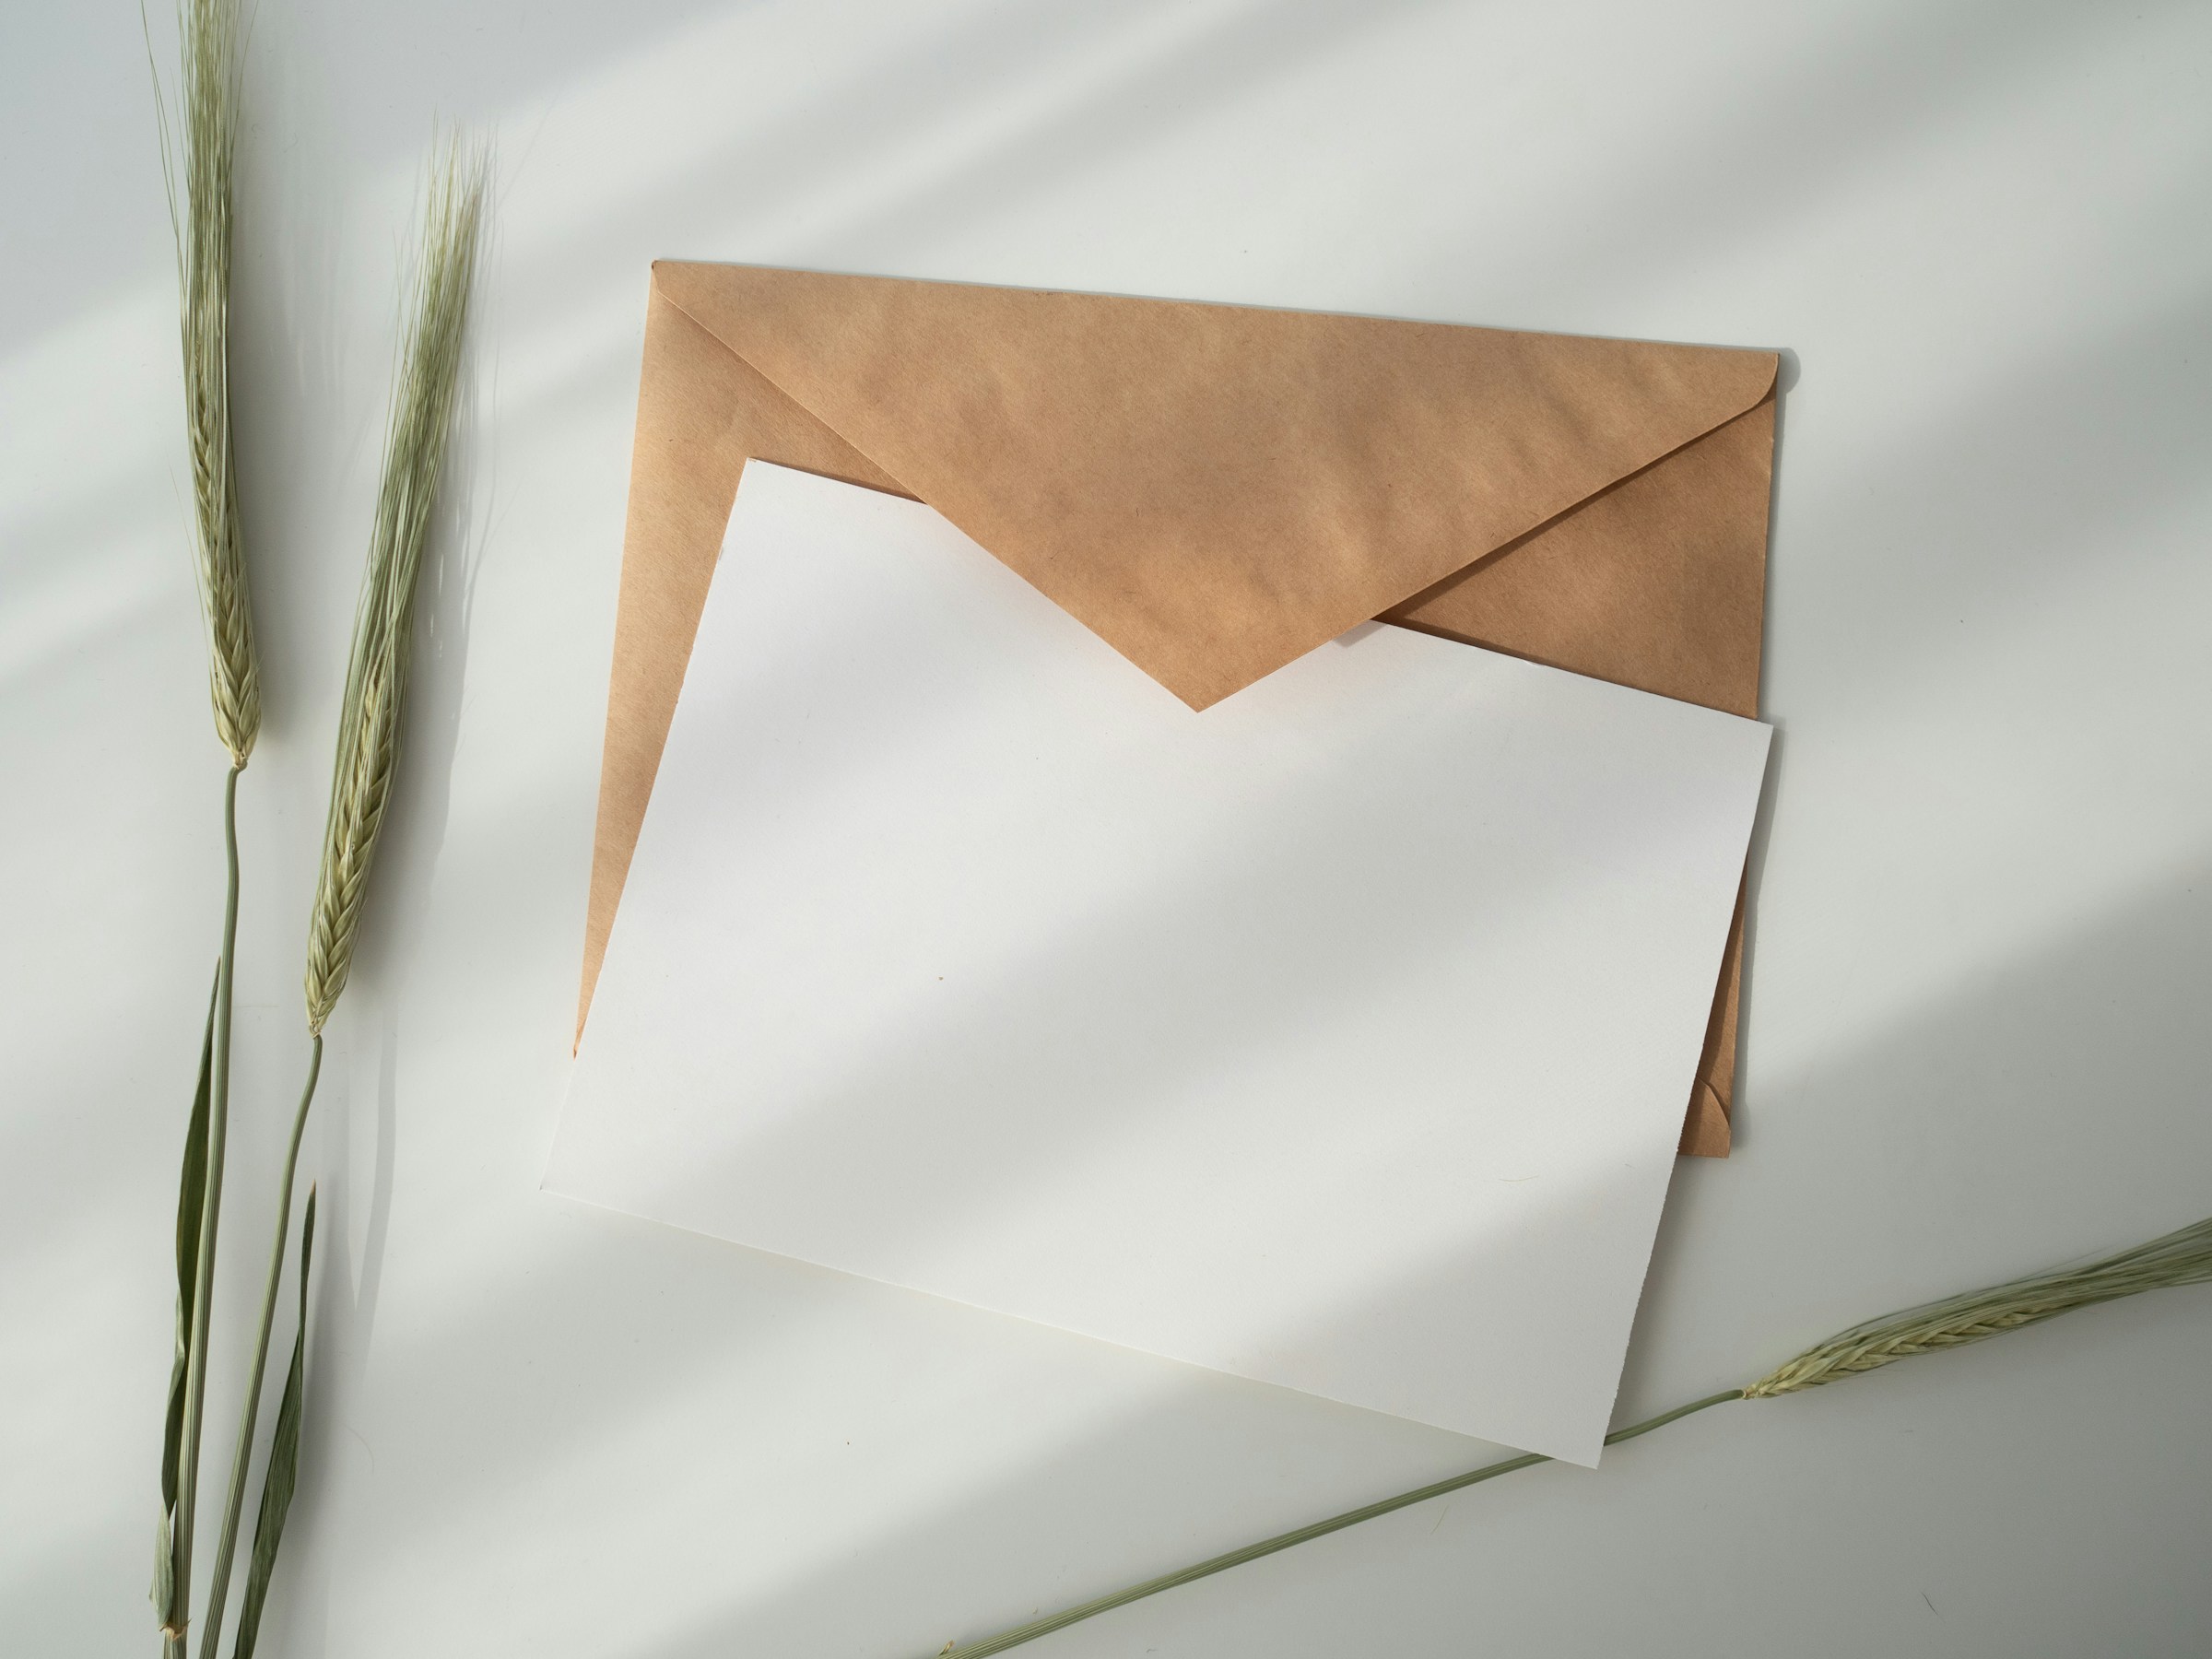 Enveloppe brune avec du papier blanc | Source : Unsplash